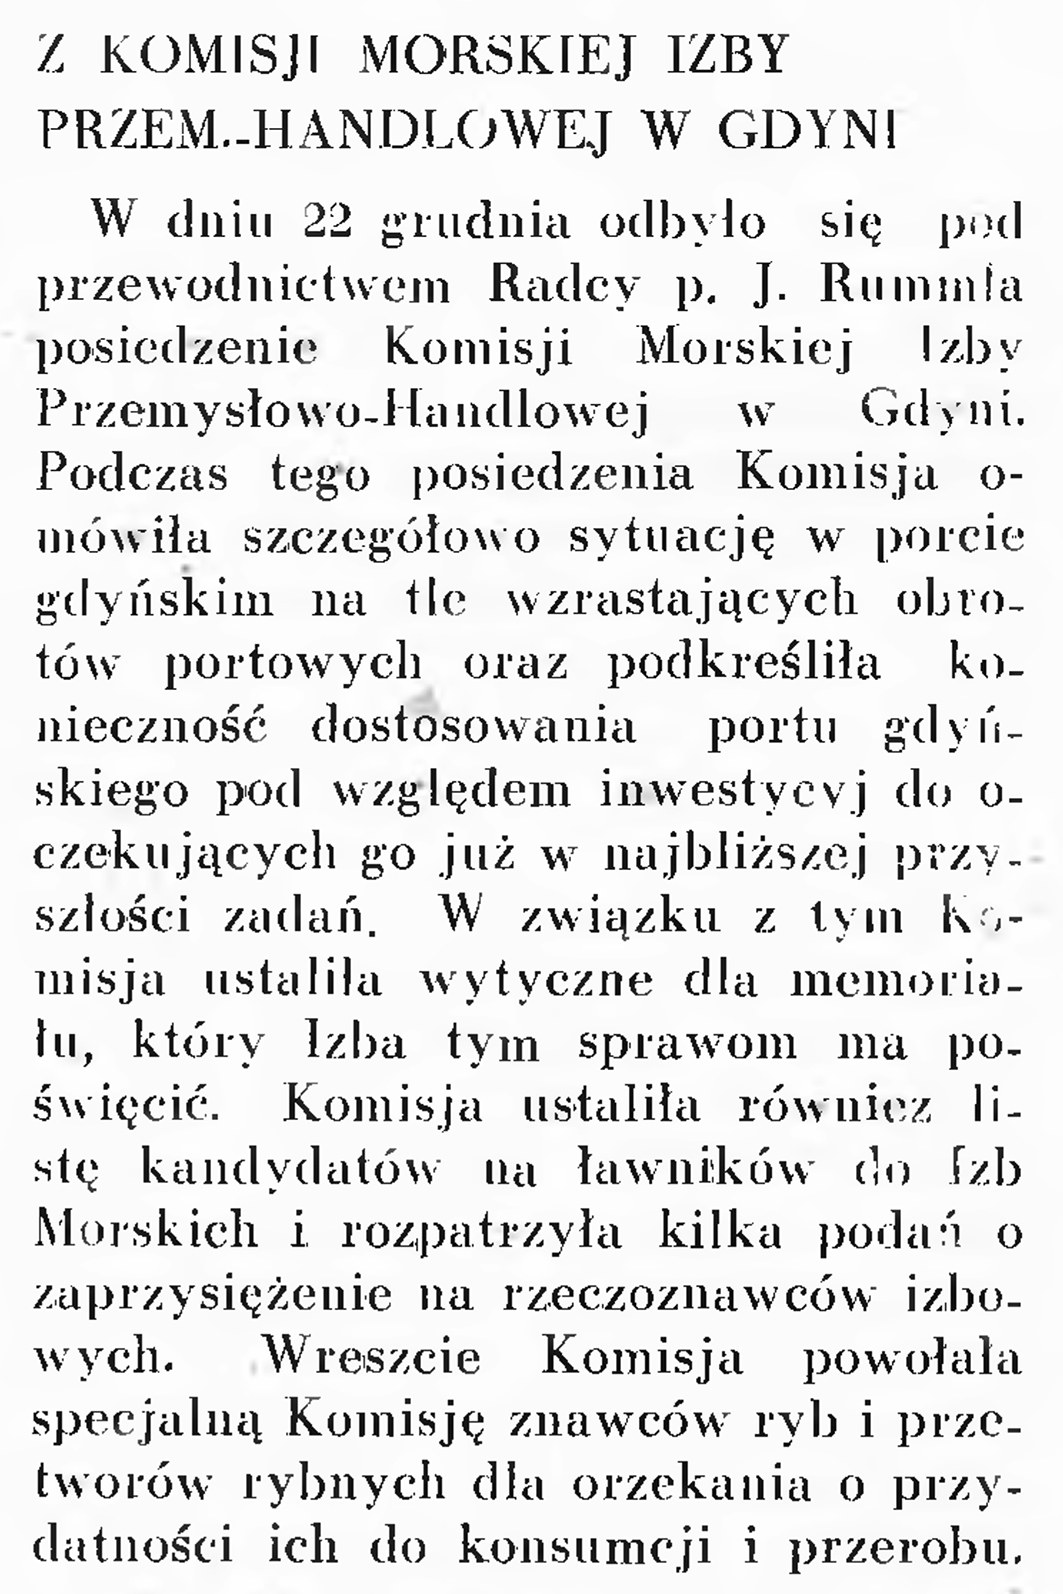 Z Komisji Morskiej Izby Przem.-Handlowej w Gdyni // Wiadomości Portu Gdyńskiego. - 1937, nr 12, s. 16